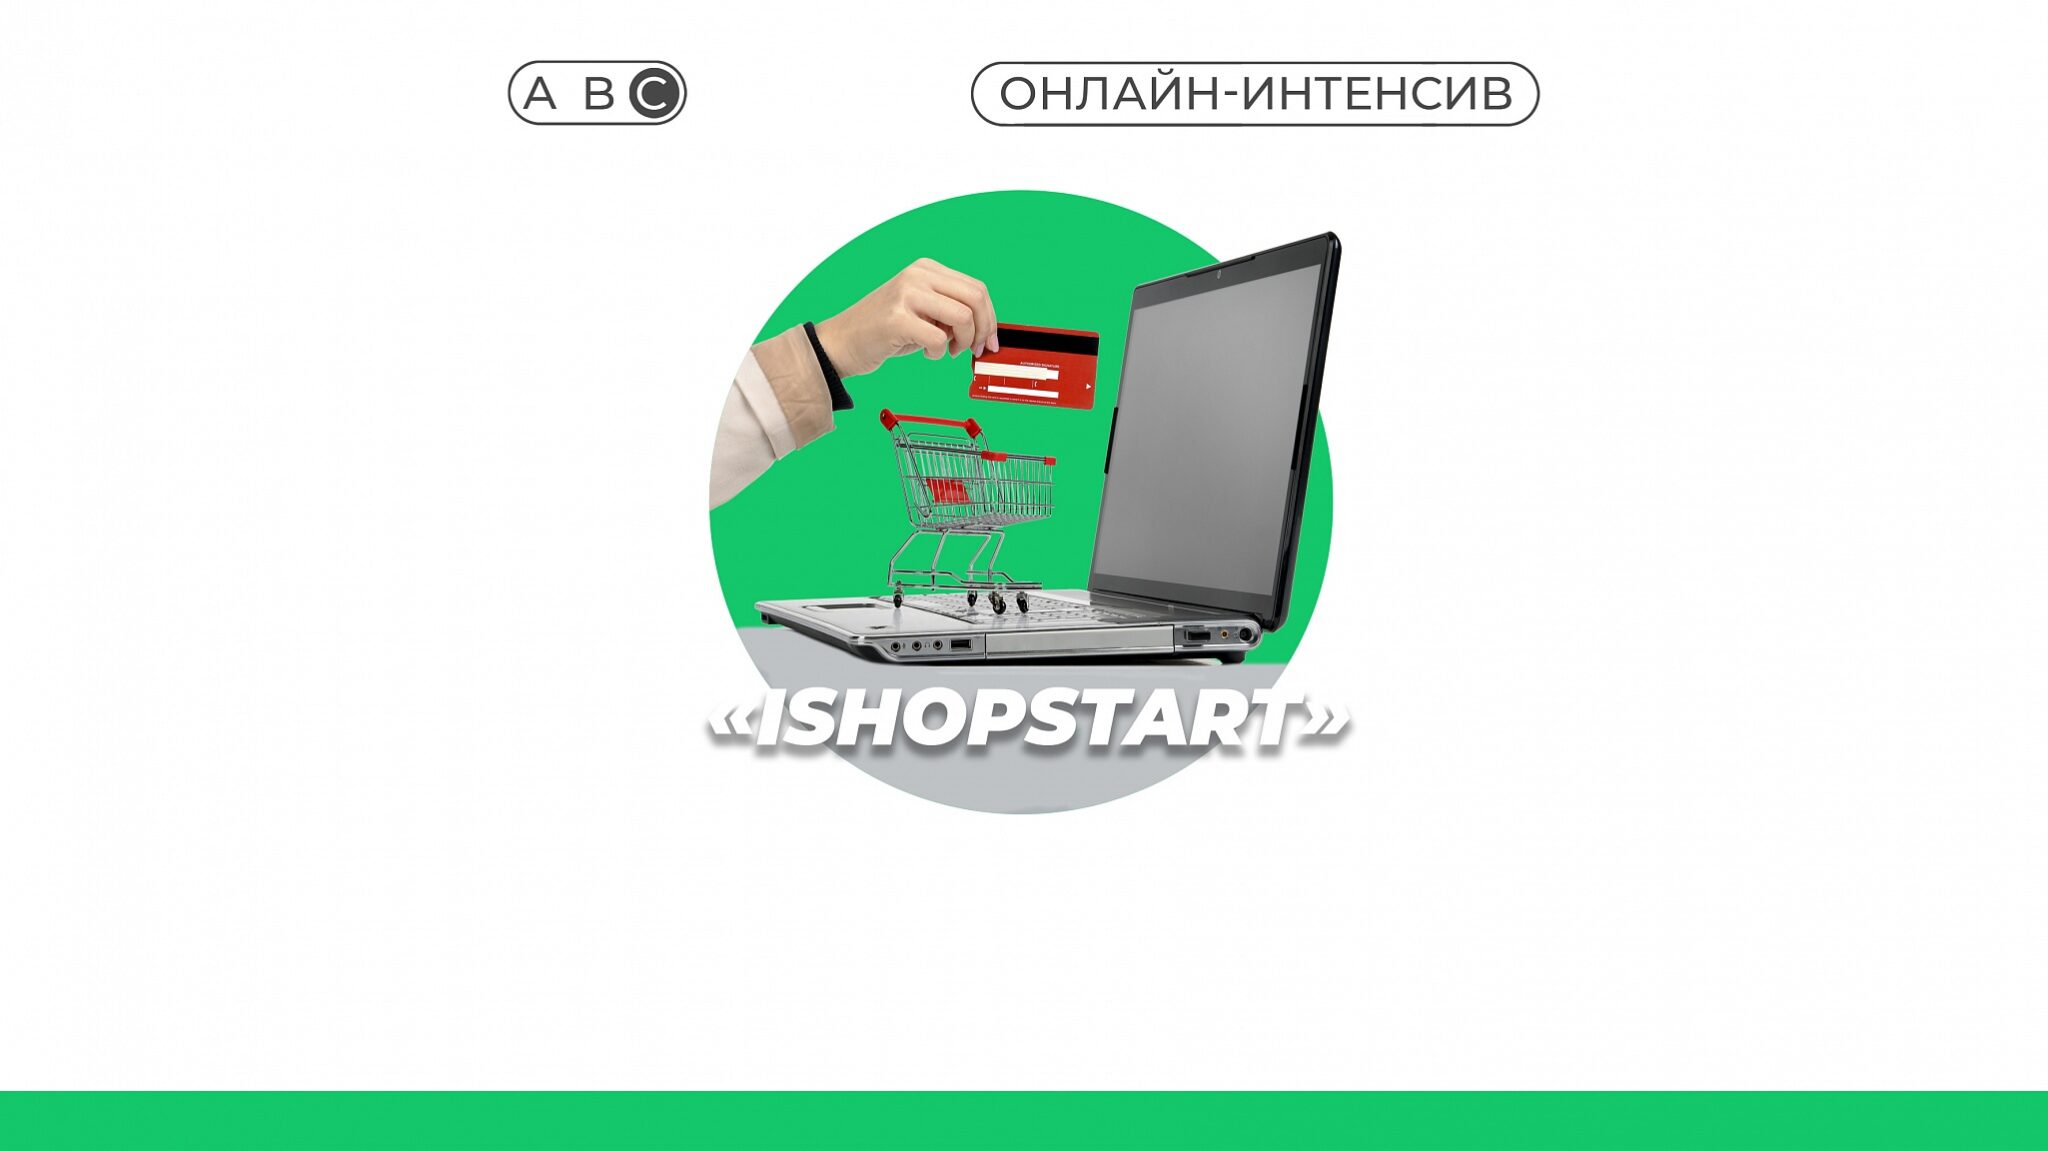 Фонд поддержки предпринимательства Крыма информирует о проведении онлайн-интенсива «iShopStart – Интернет магазин с нуля»